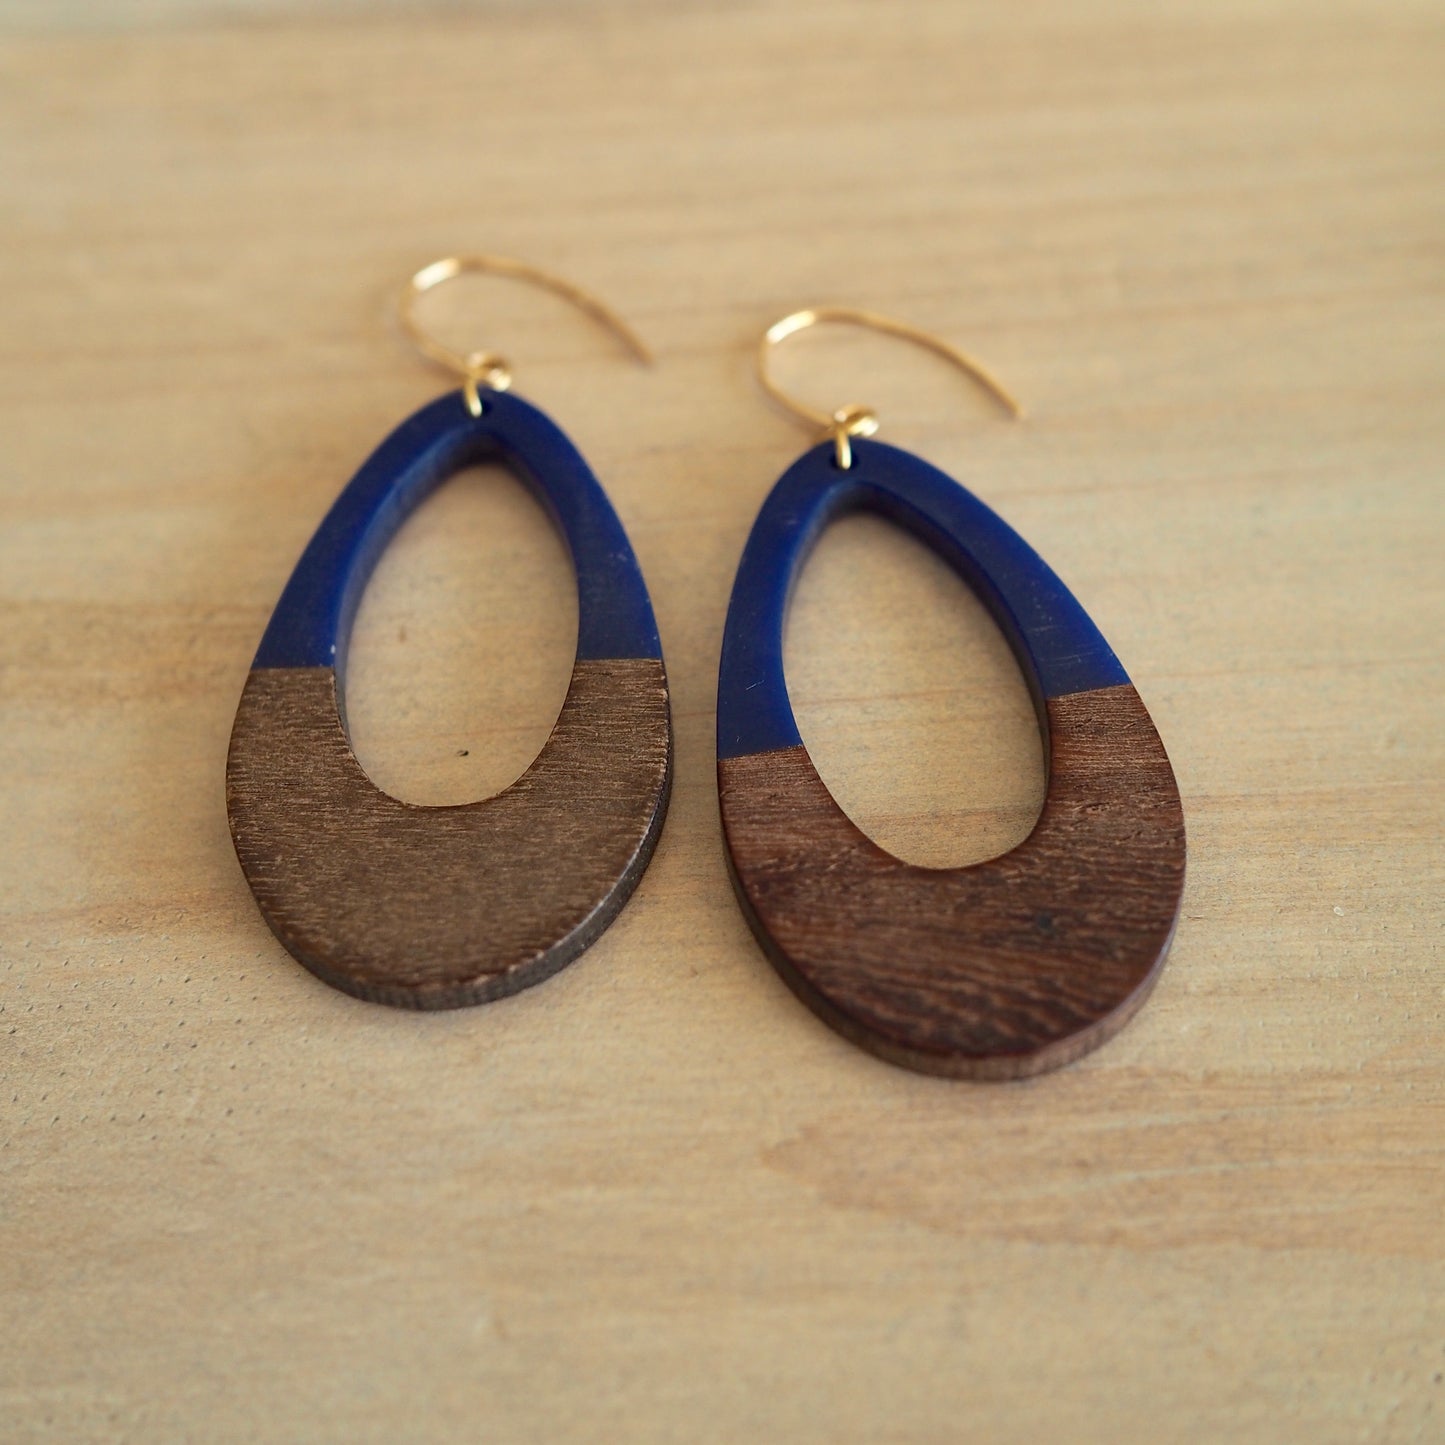 Navy and wood earrings by Nancy Wallis Designs in Canada